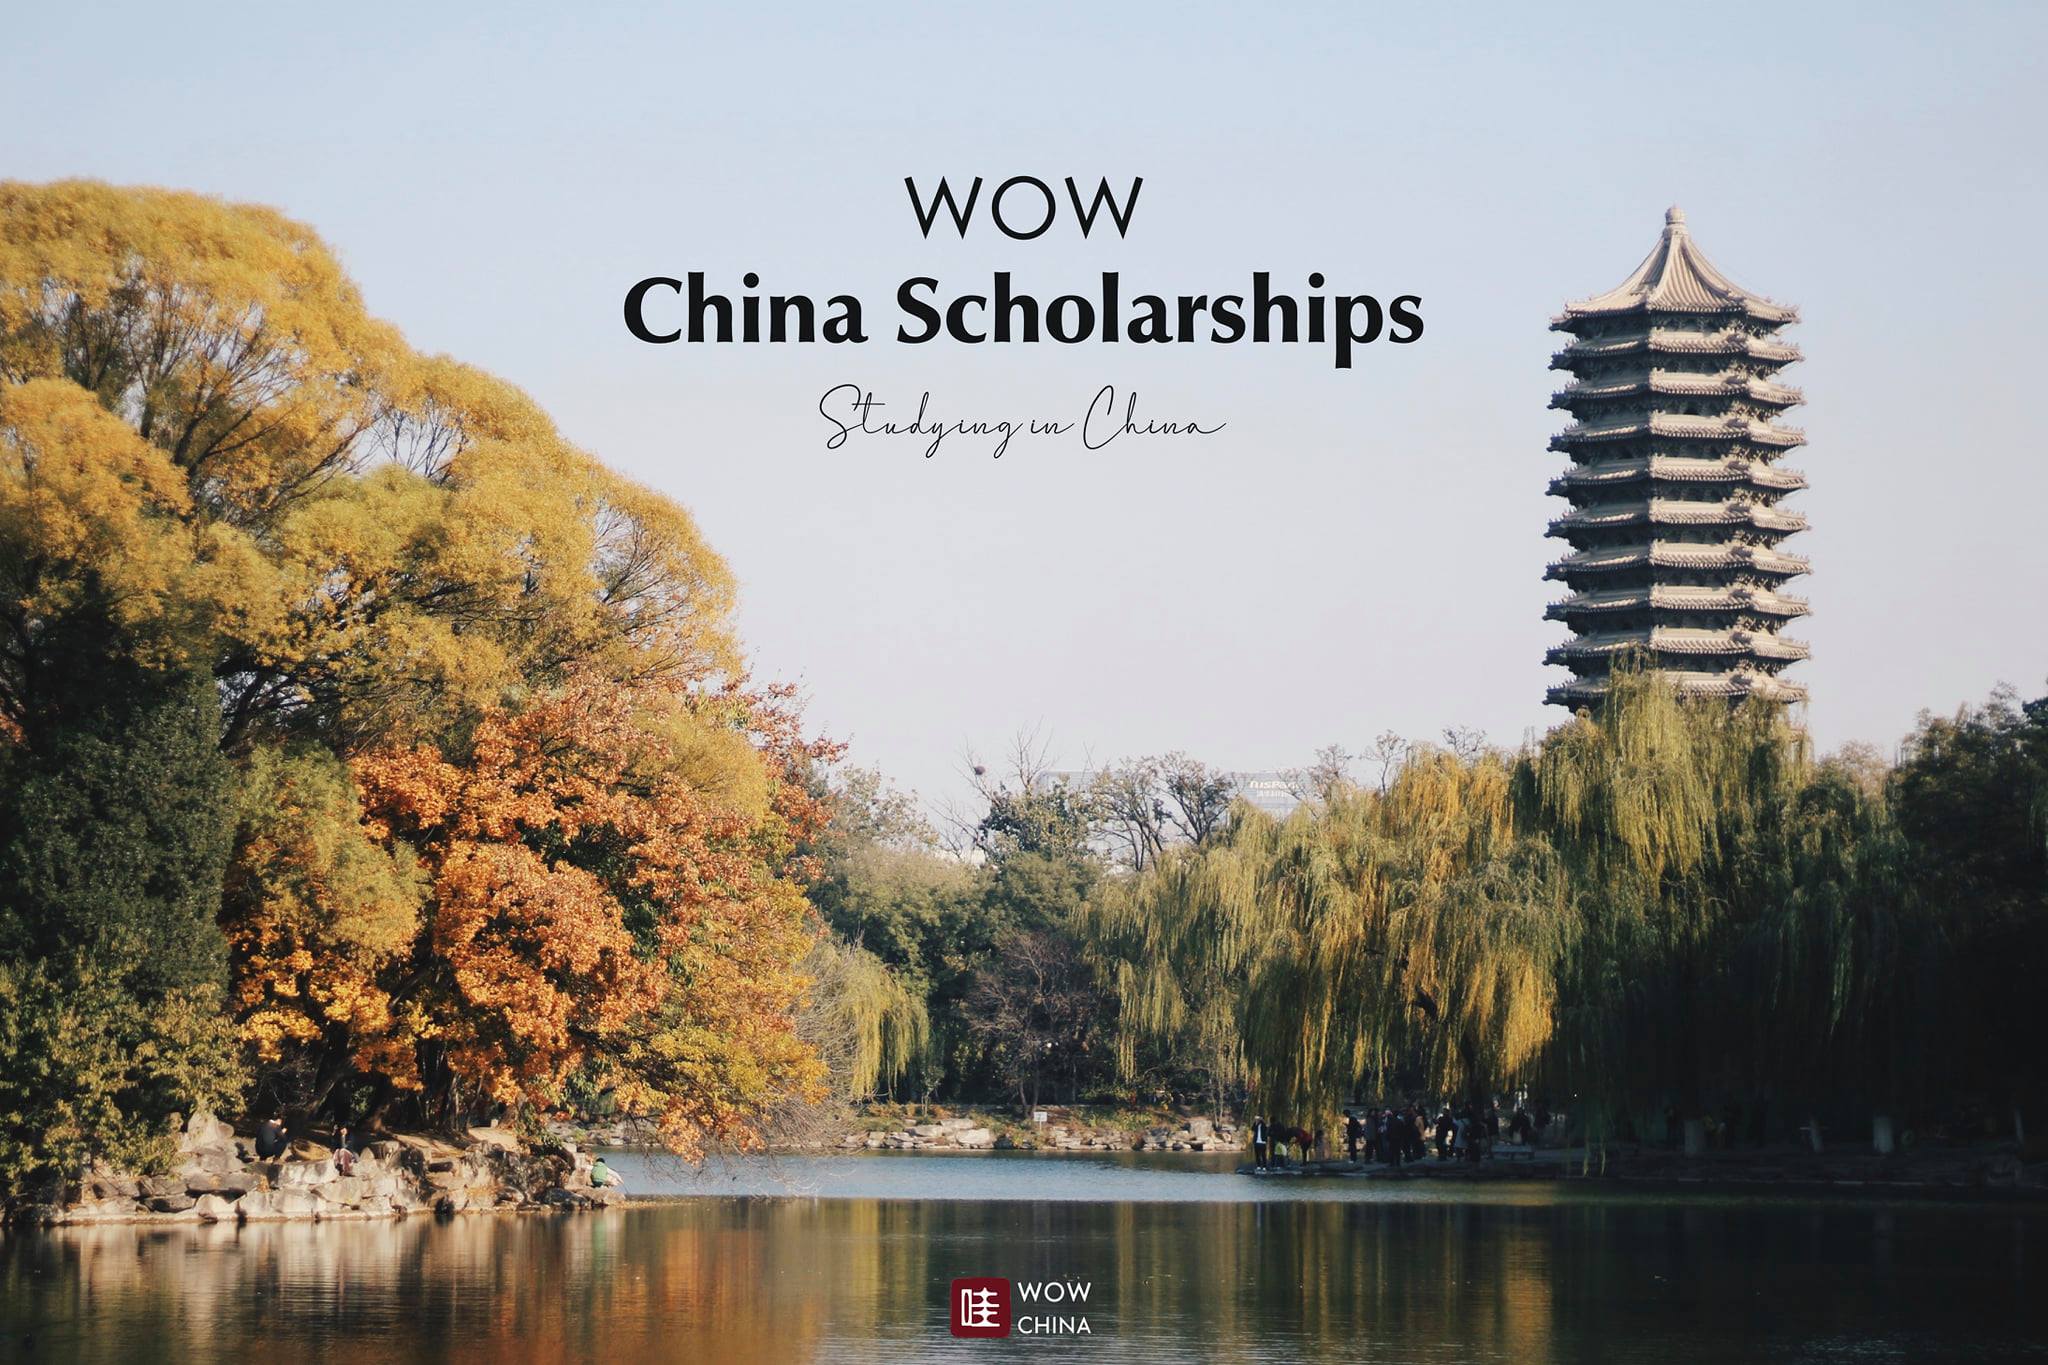 รวม “8 ทุนการศึกษาฟรี” ในประเทศจีน 
อีกช่องทางเรียนต่อยอดนิยม
ครอบคลุมหลากหลายสา…